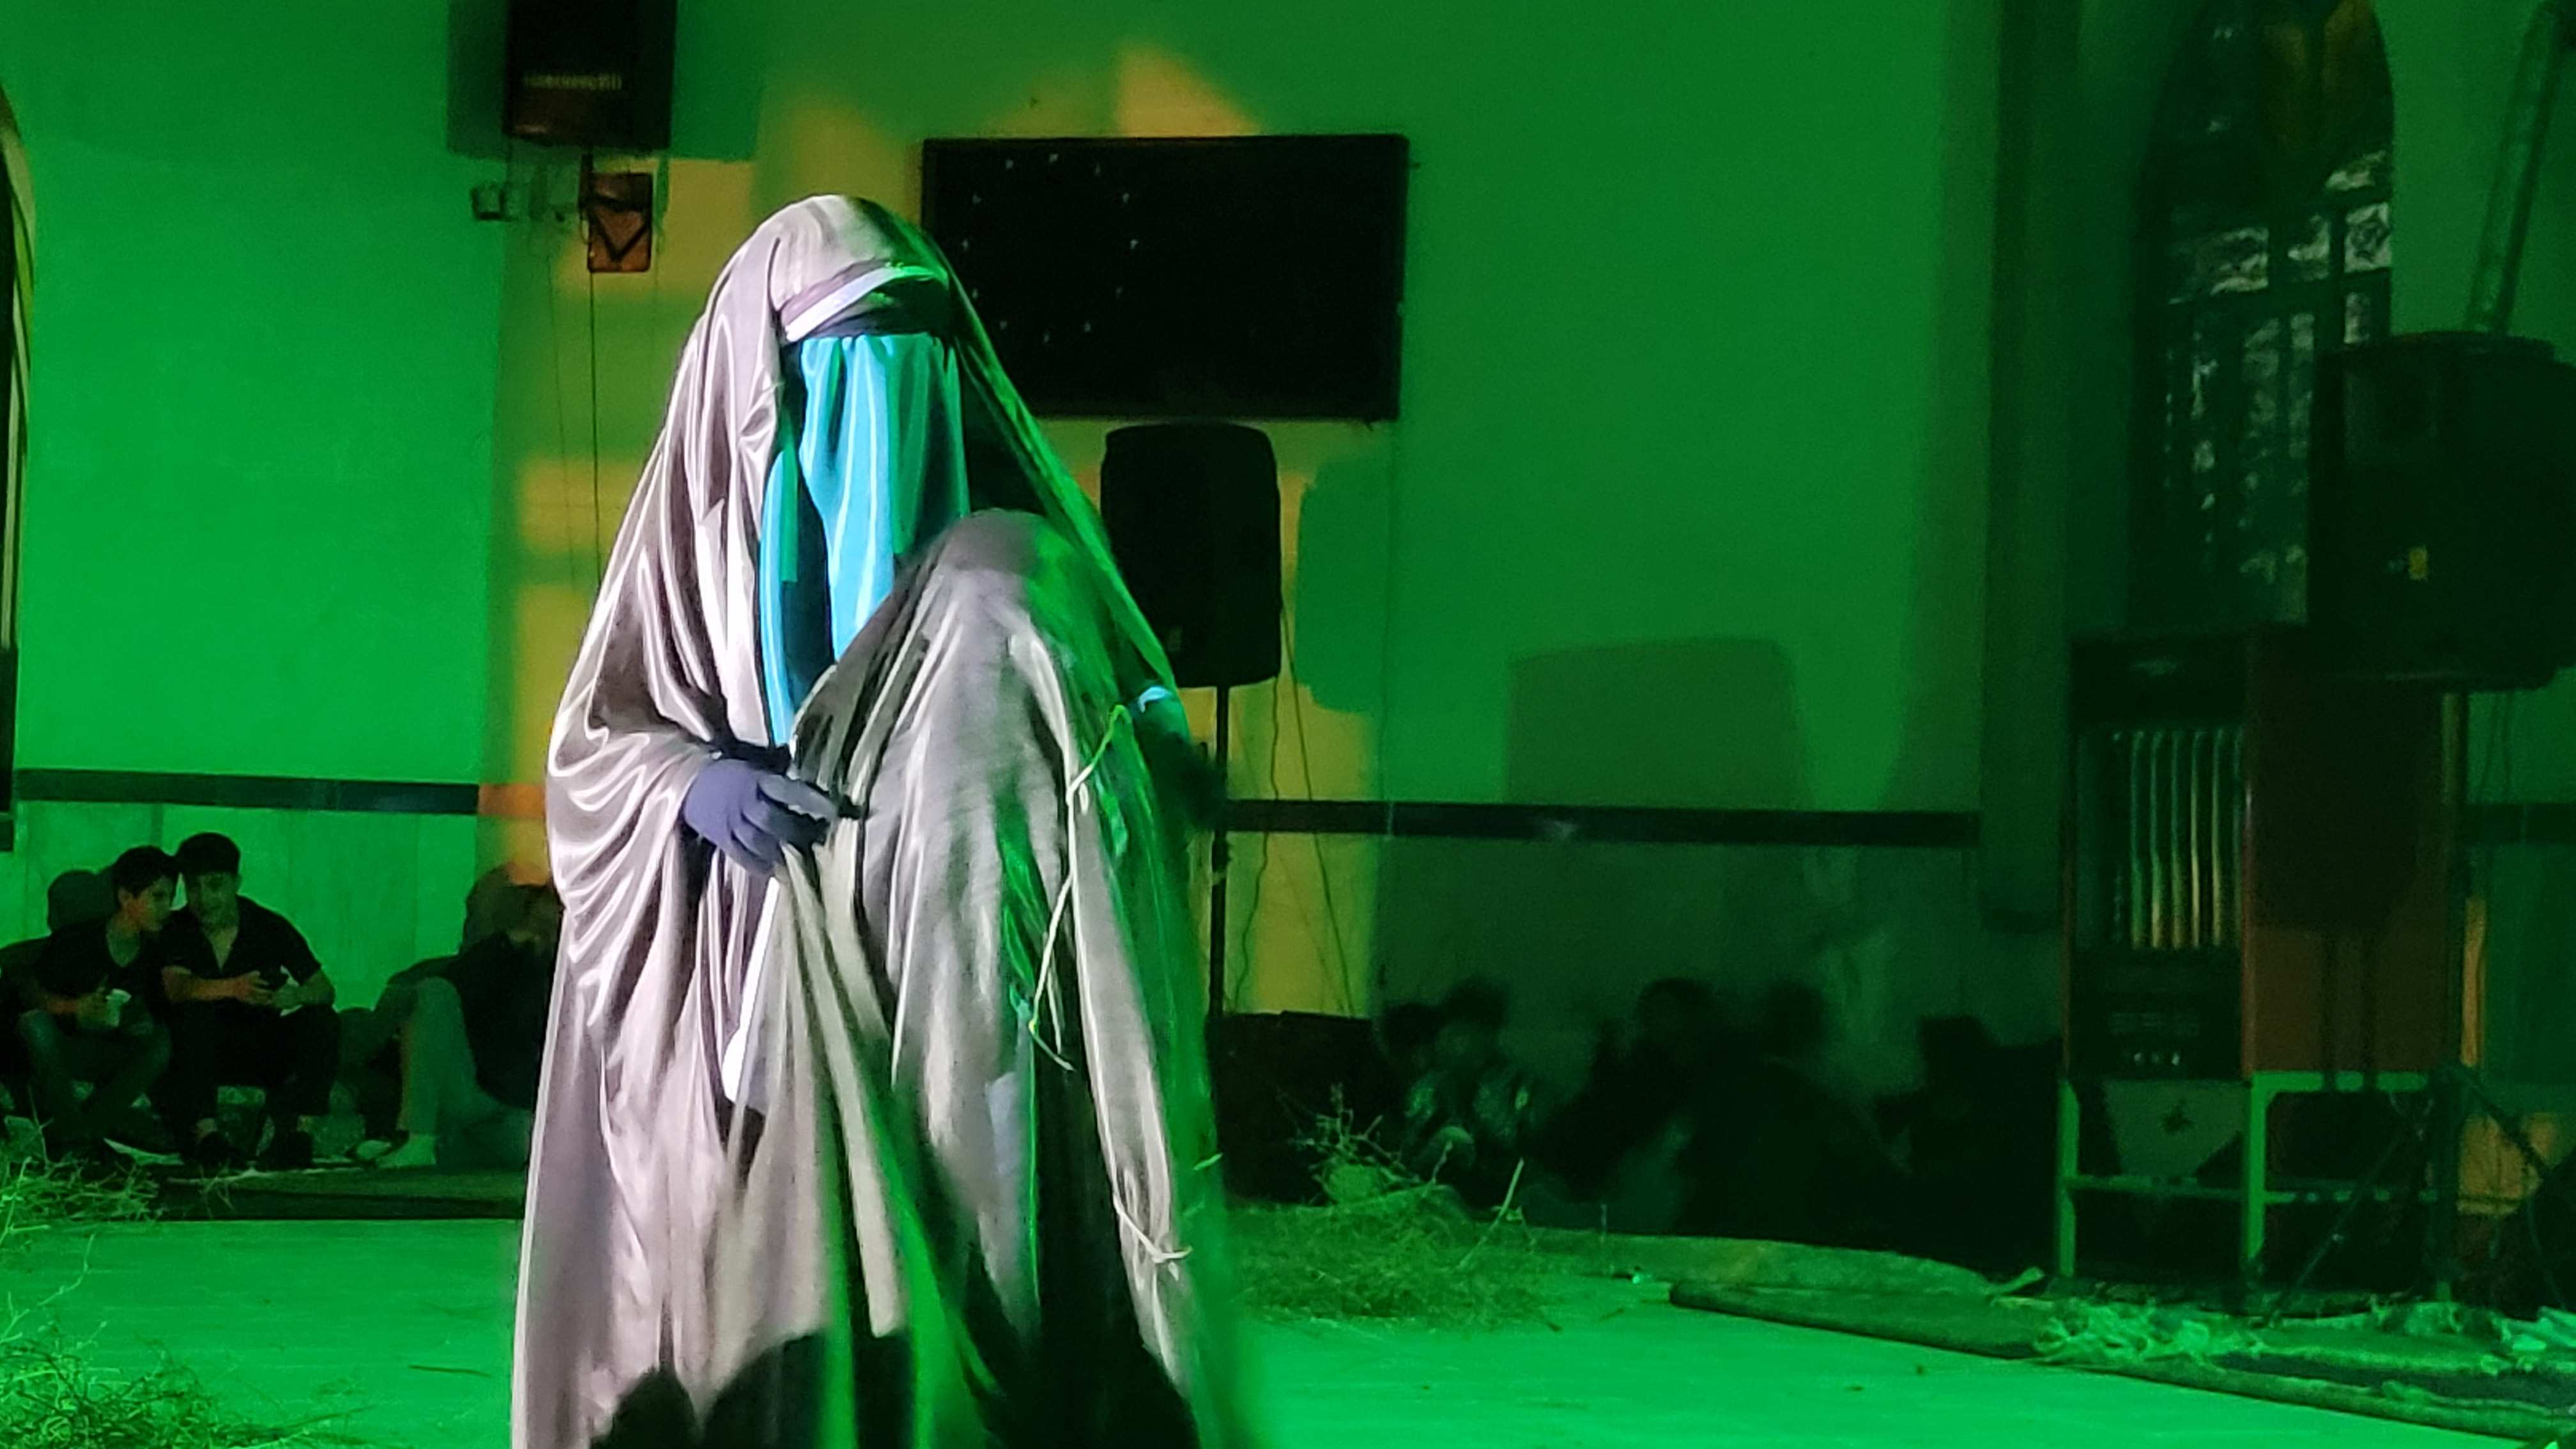 نمایش مذهبی حضرت رقیه(س) در روستای قاسم آباد بزرگ ساوجبلاغ برگزار شد + تصاویر